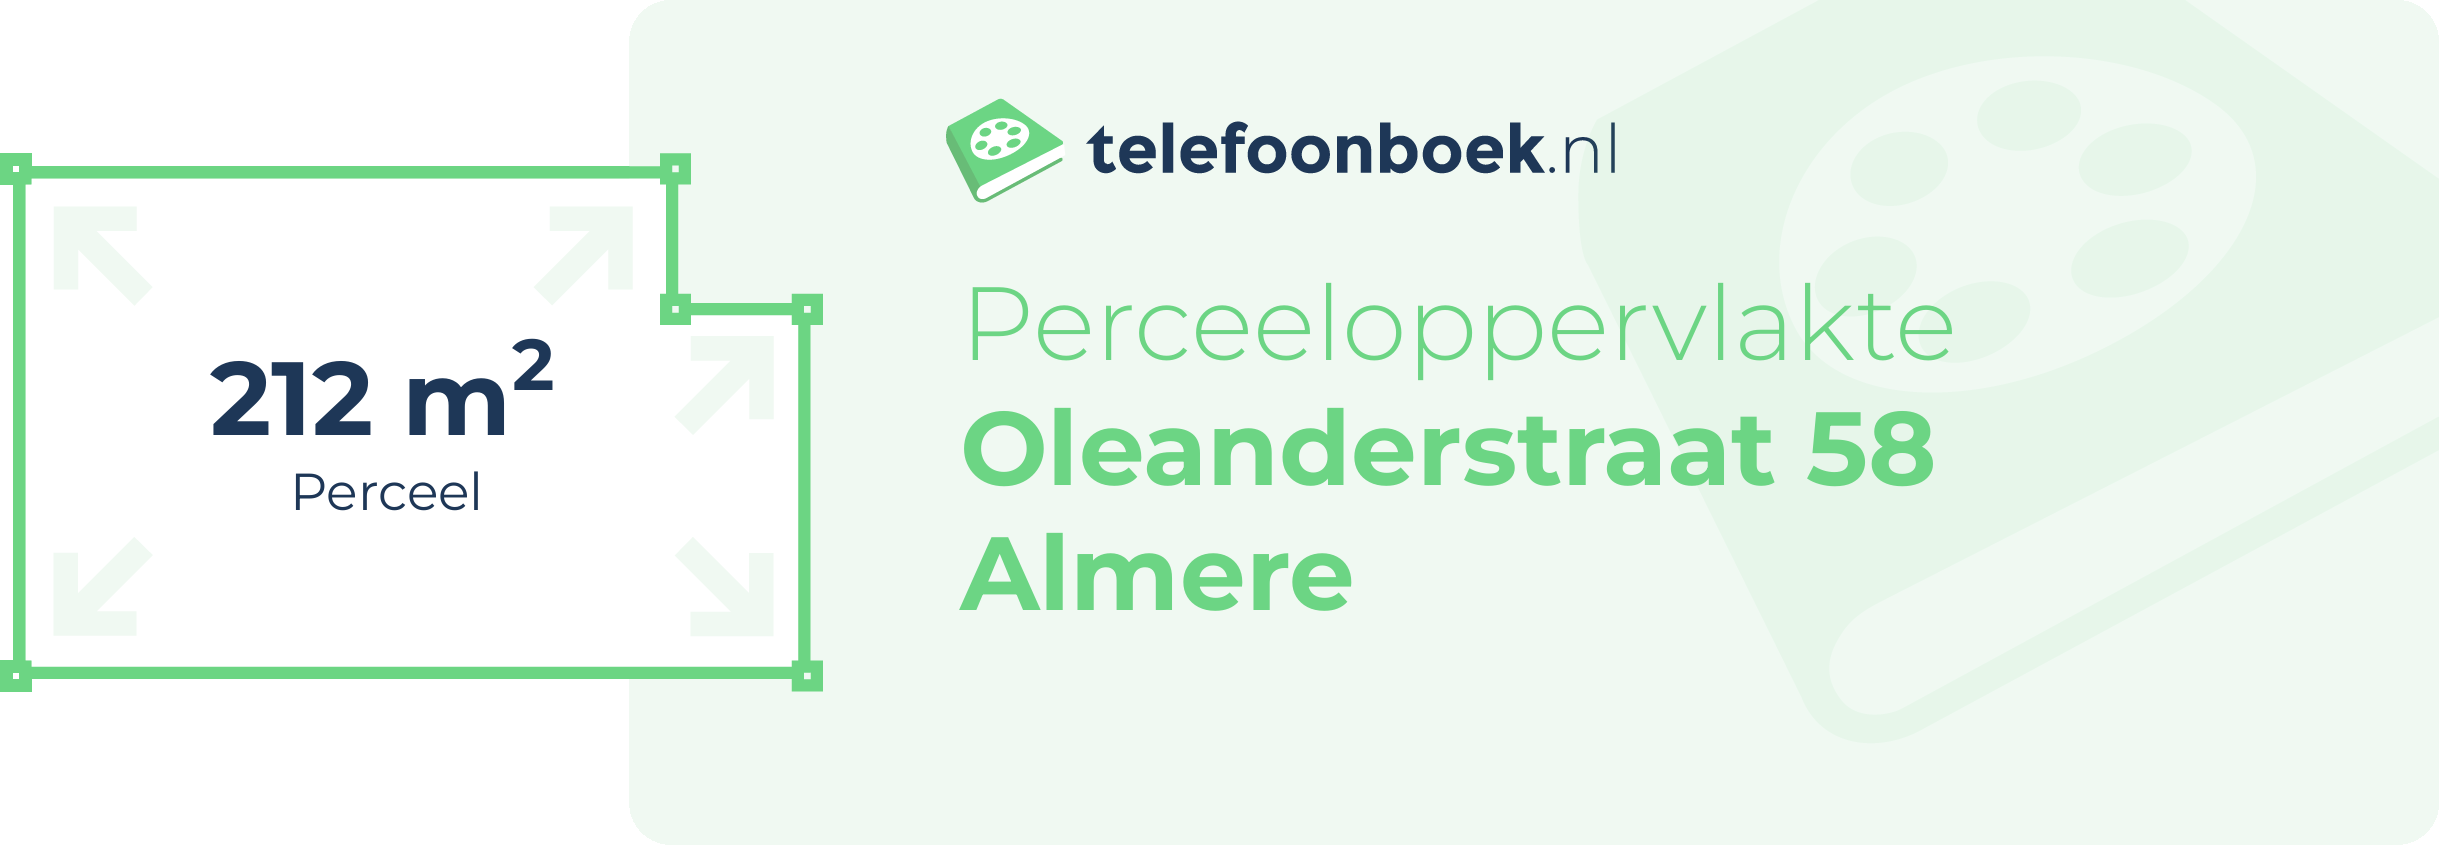 Perceeloppervlakte Oleanderstraat 58 Almere